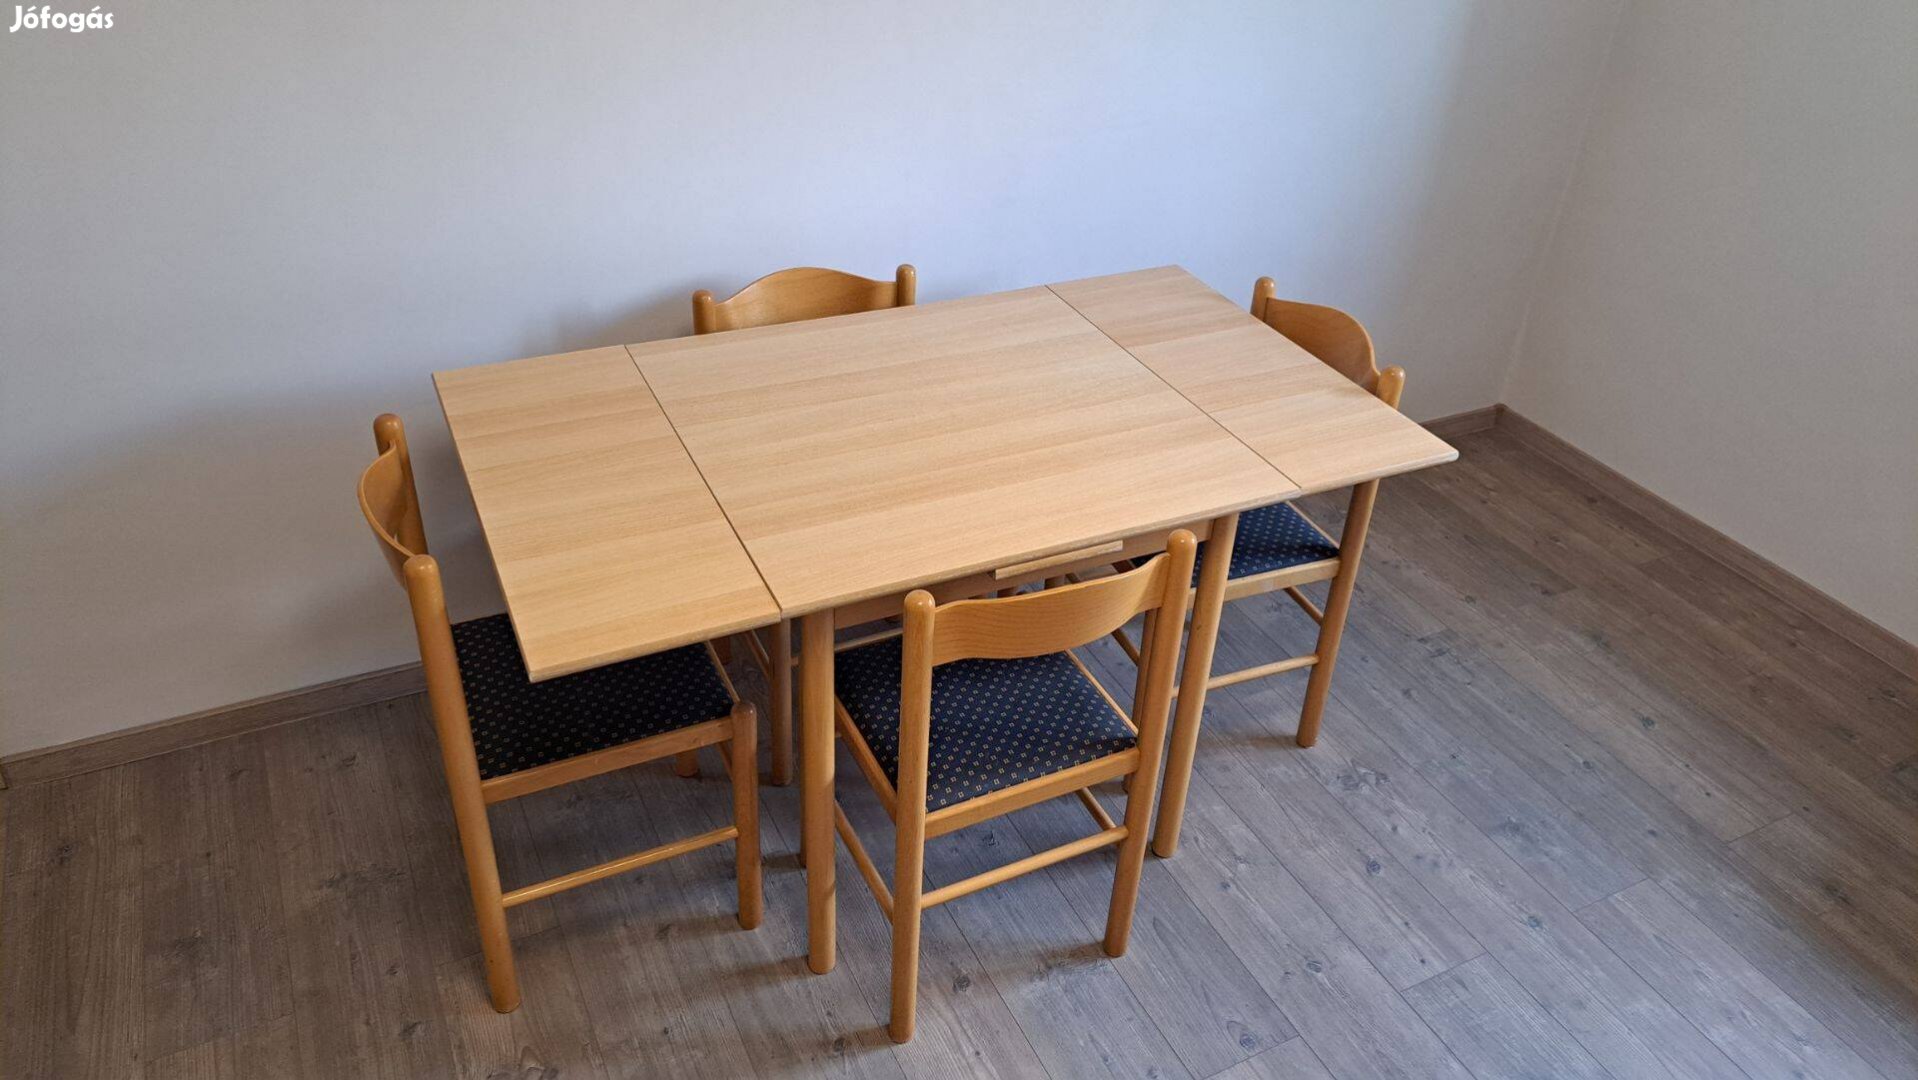 Asztal + 4 szék